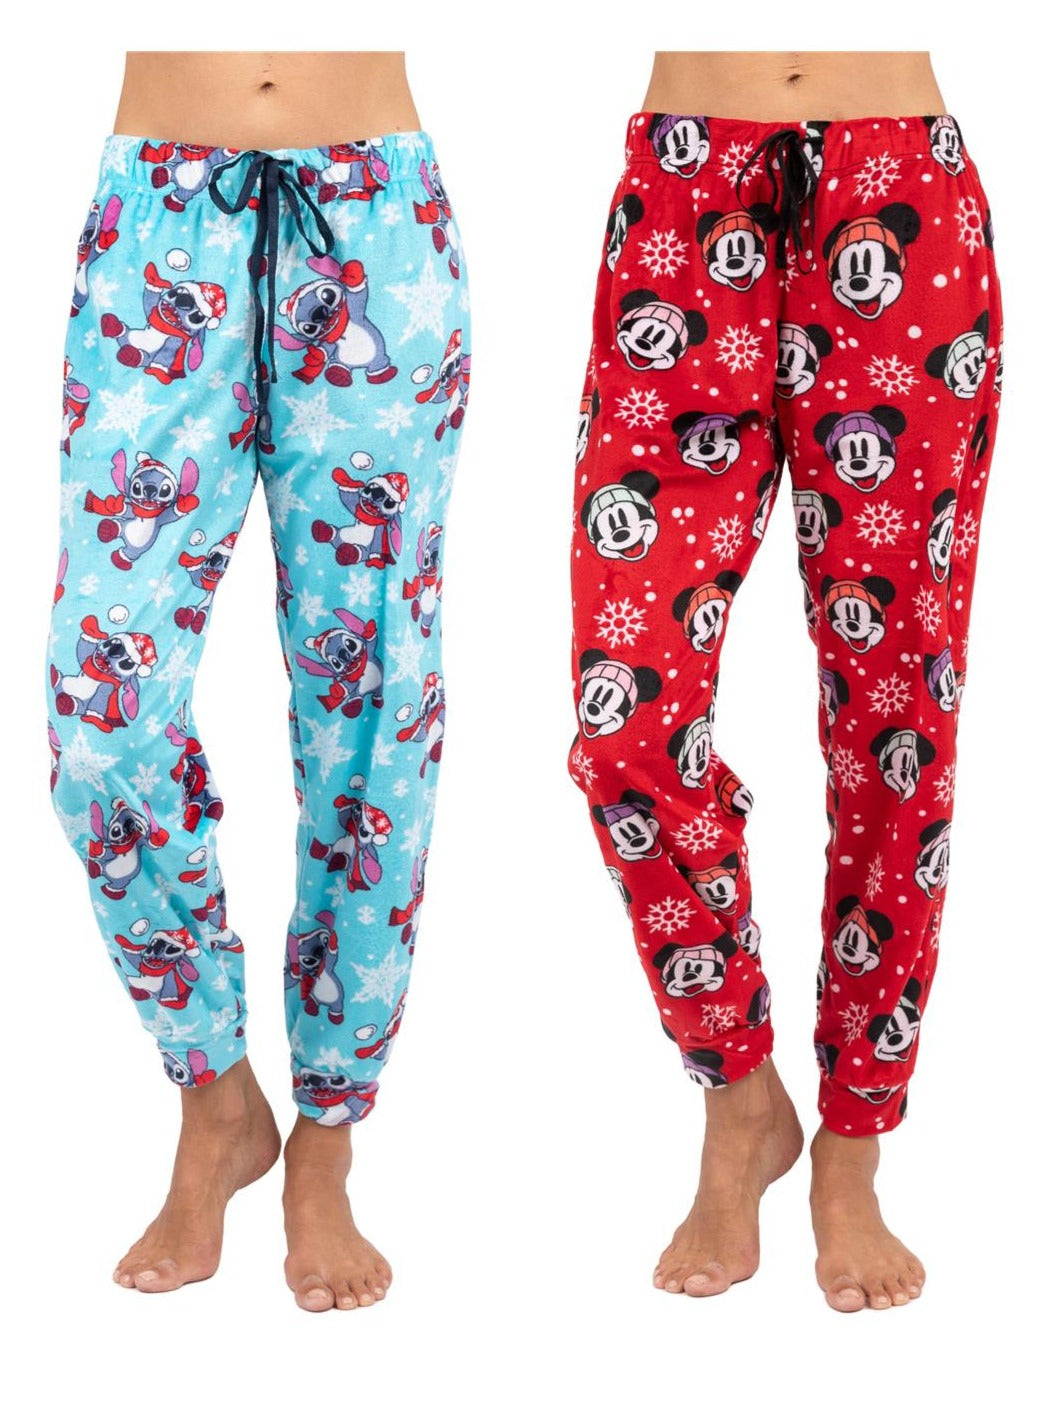 Disney Women's Plush Jogger Pajama Pants - Pack of 2 – Premium